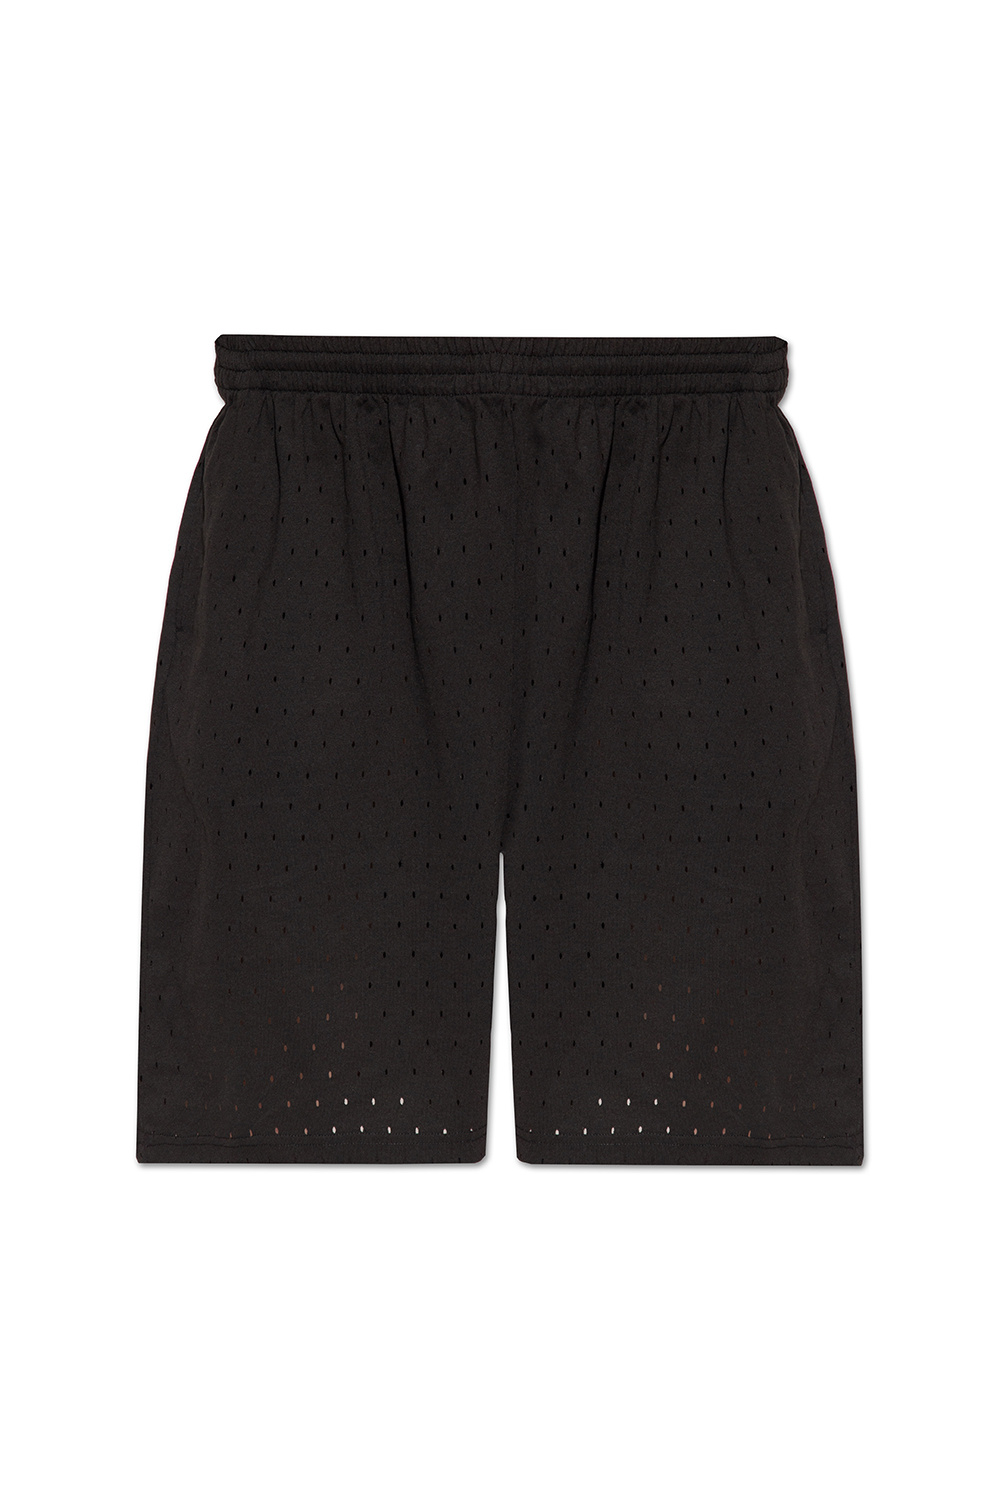 Balenciaga Perforated shorts